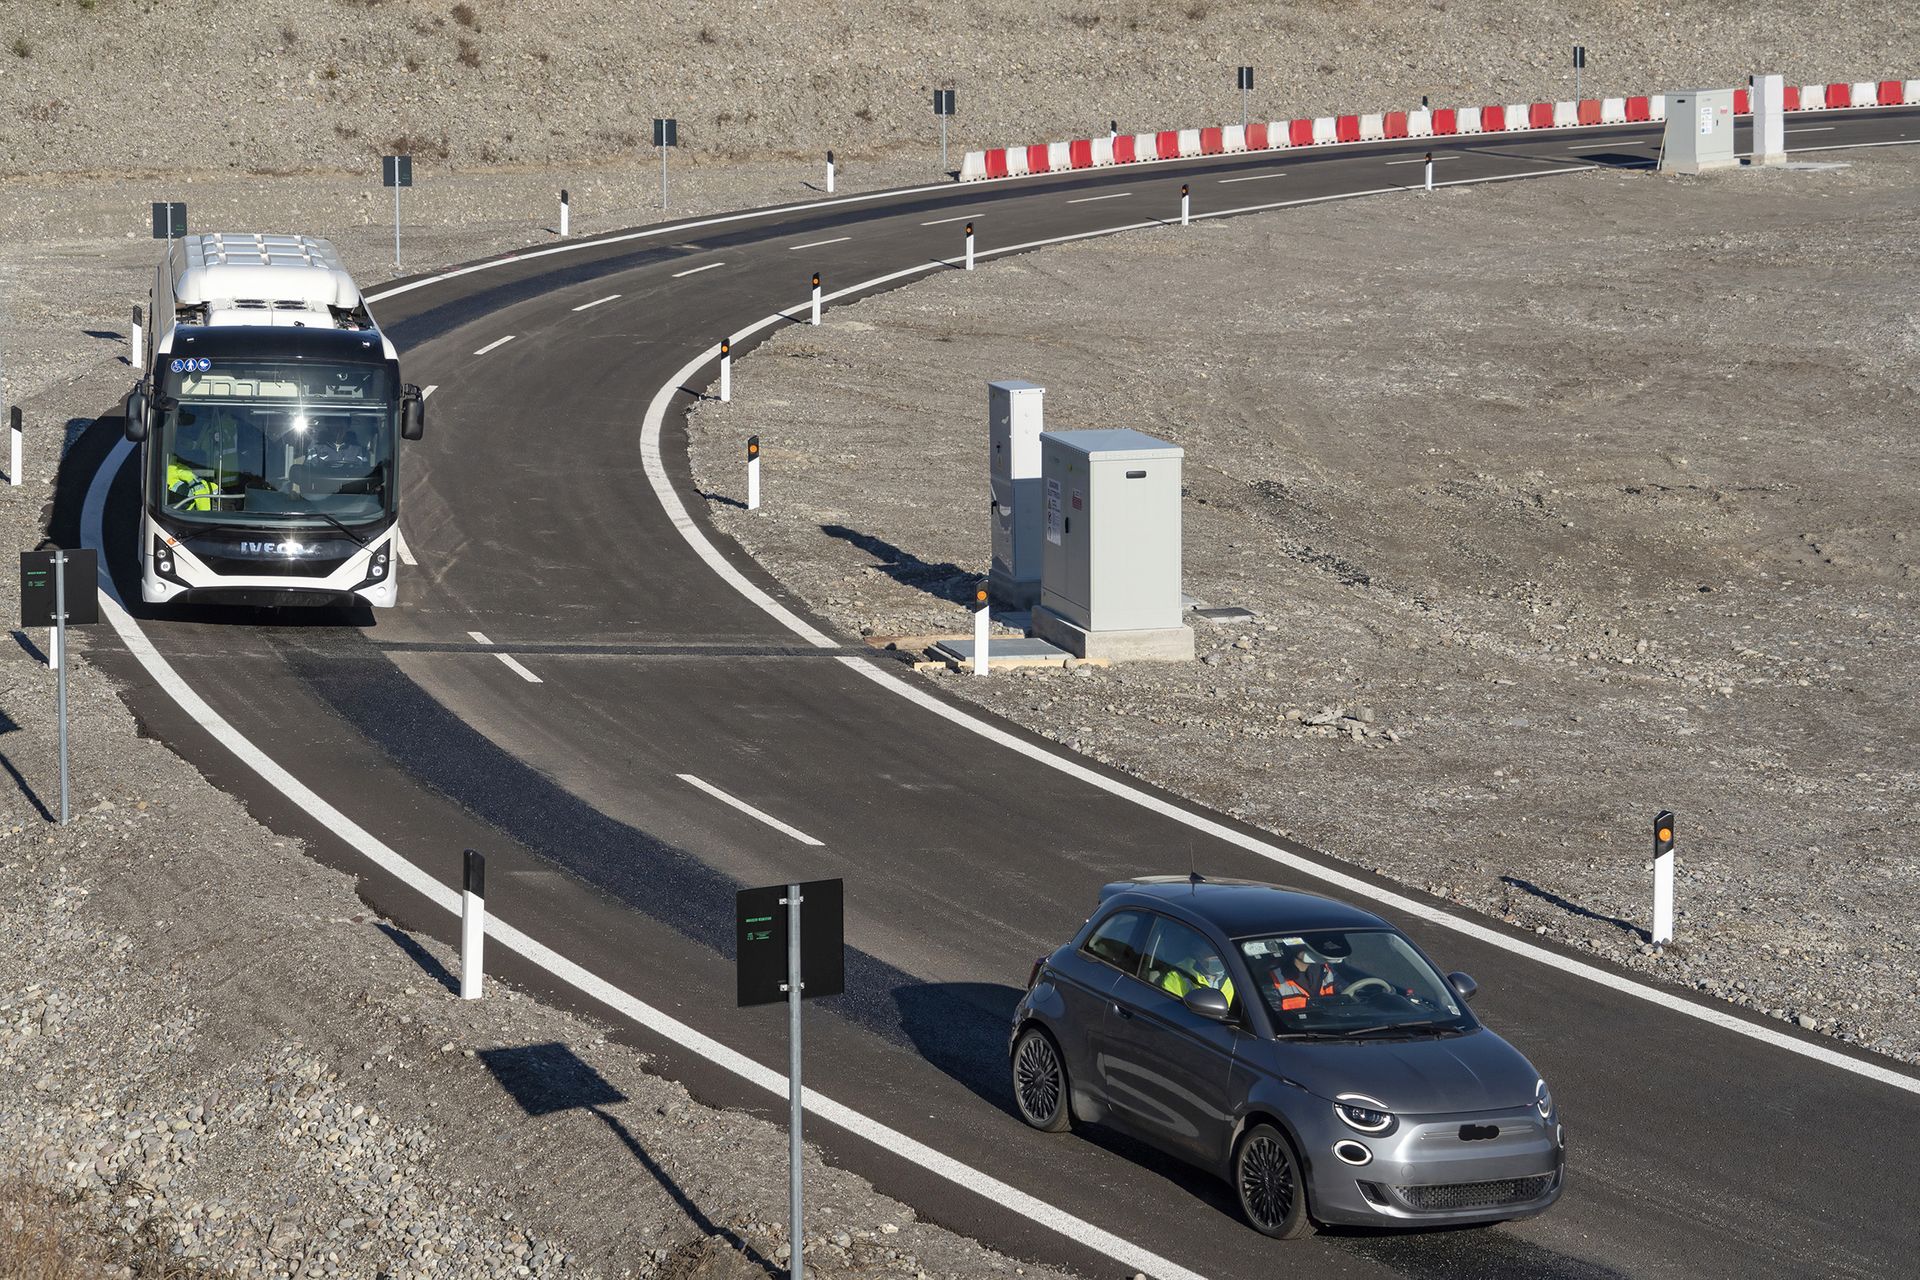 Тестовете на електрическия автобус Iveco и Fiat 500 в „Арената на бъдещето“ в Киари, в провинция Бреша в Ломбардия: това е иновативна околовръстна верига, близо до магистрала BREBEMI A35, на която се тества индукционно зареждане на батерията на електрически превозни средства, които се движат по предназначени за тях ленти, под чиито асфалтови бобини са разположени